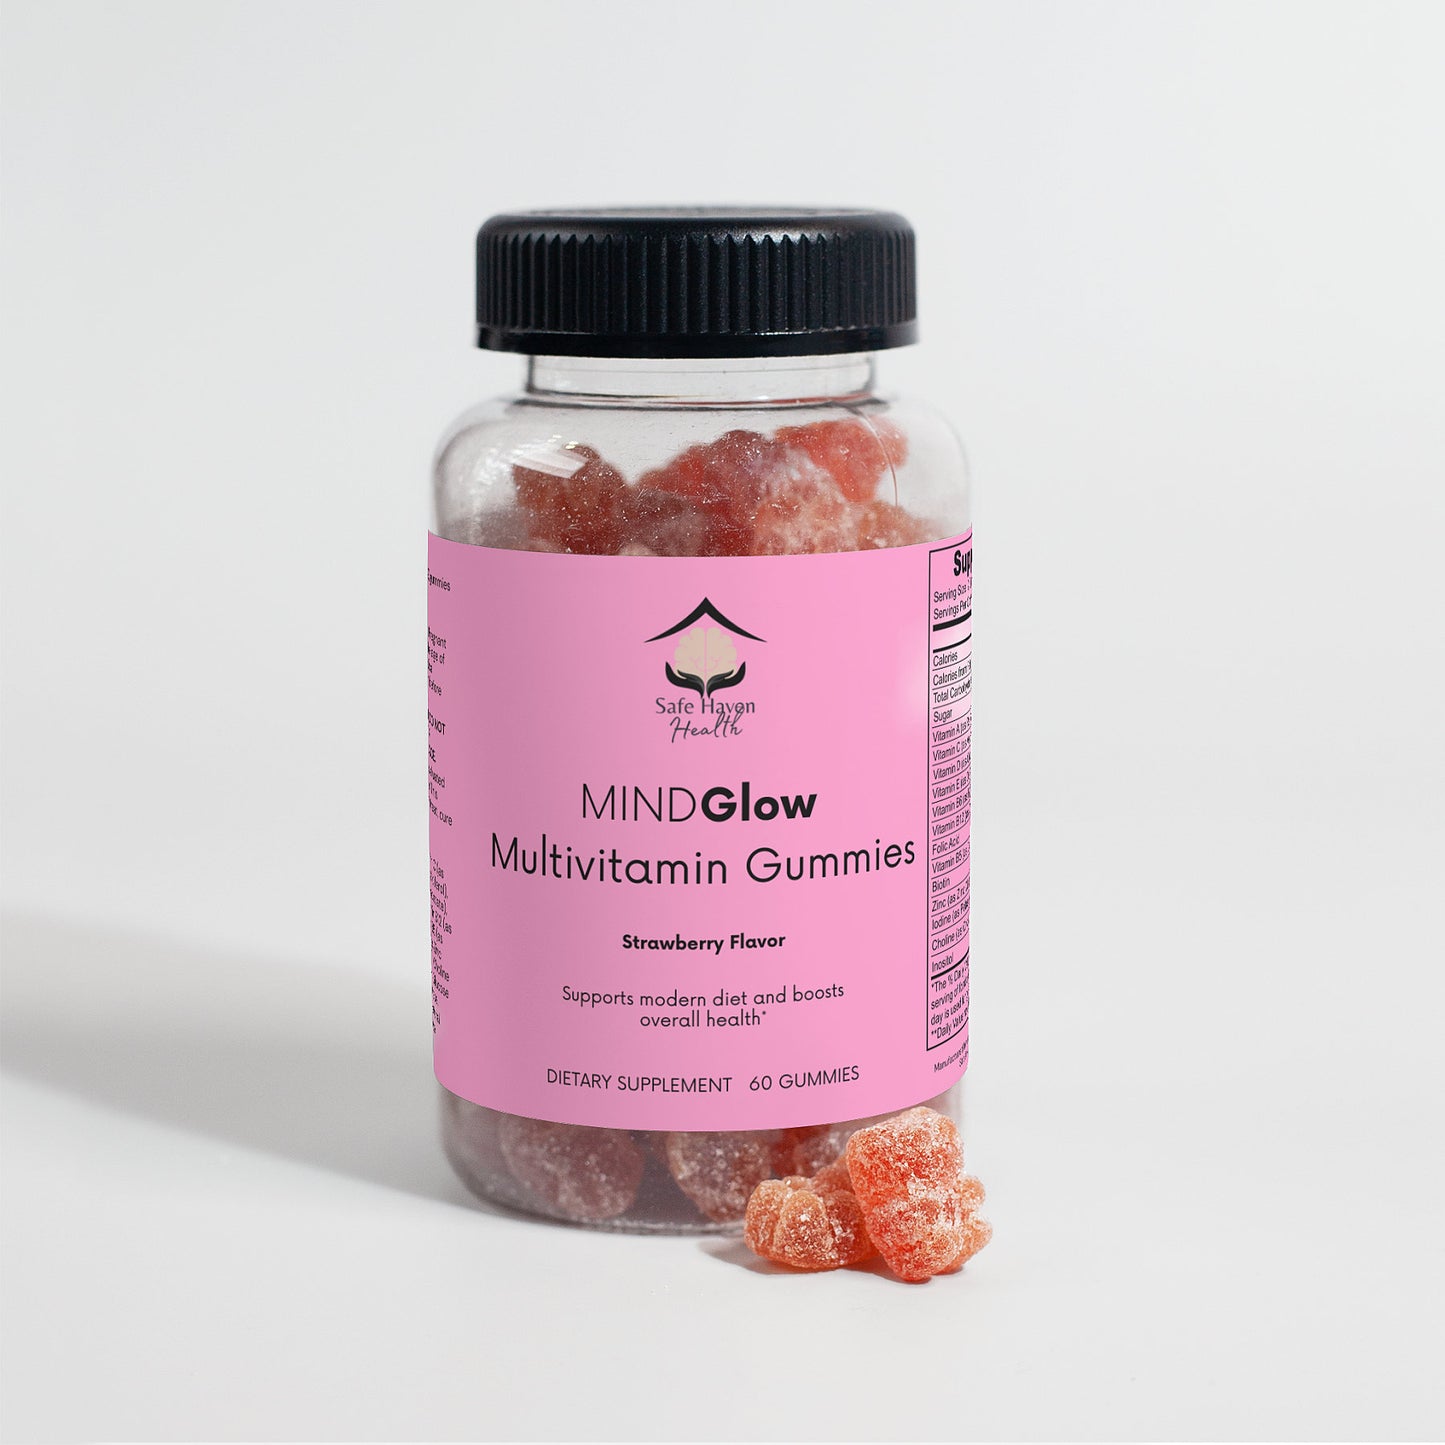 MINDGlow Multivitamin Gummies